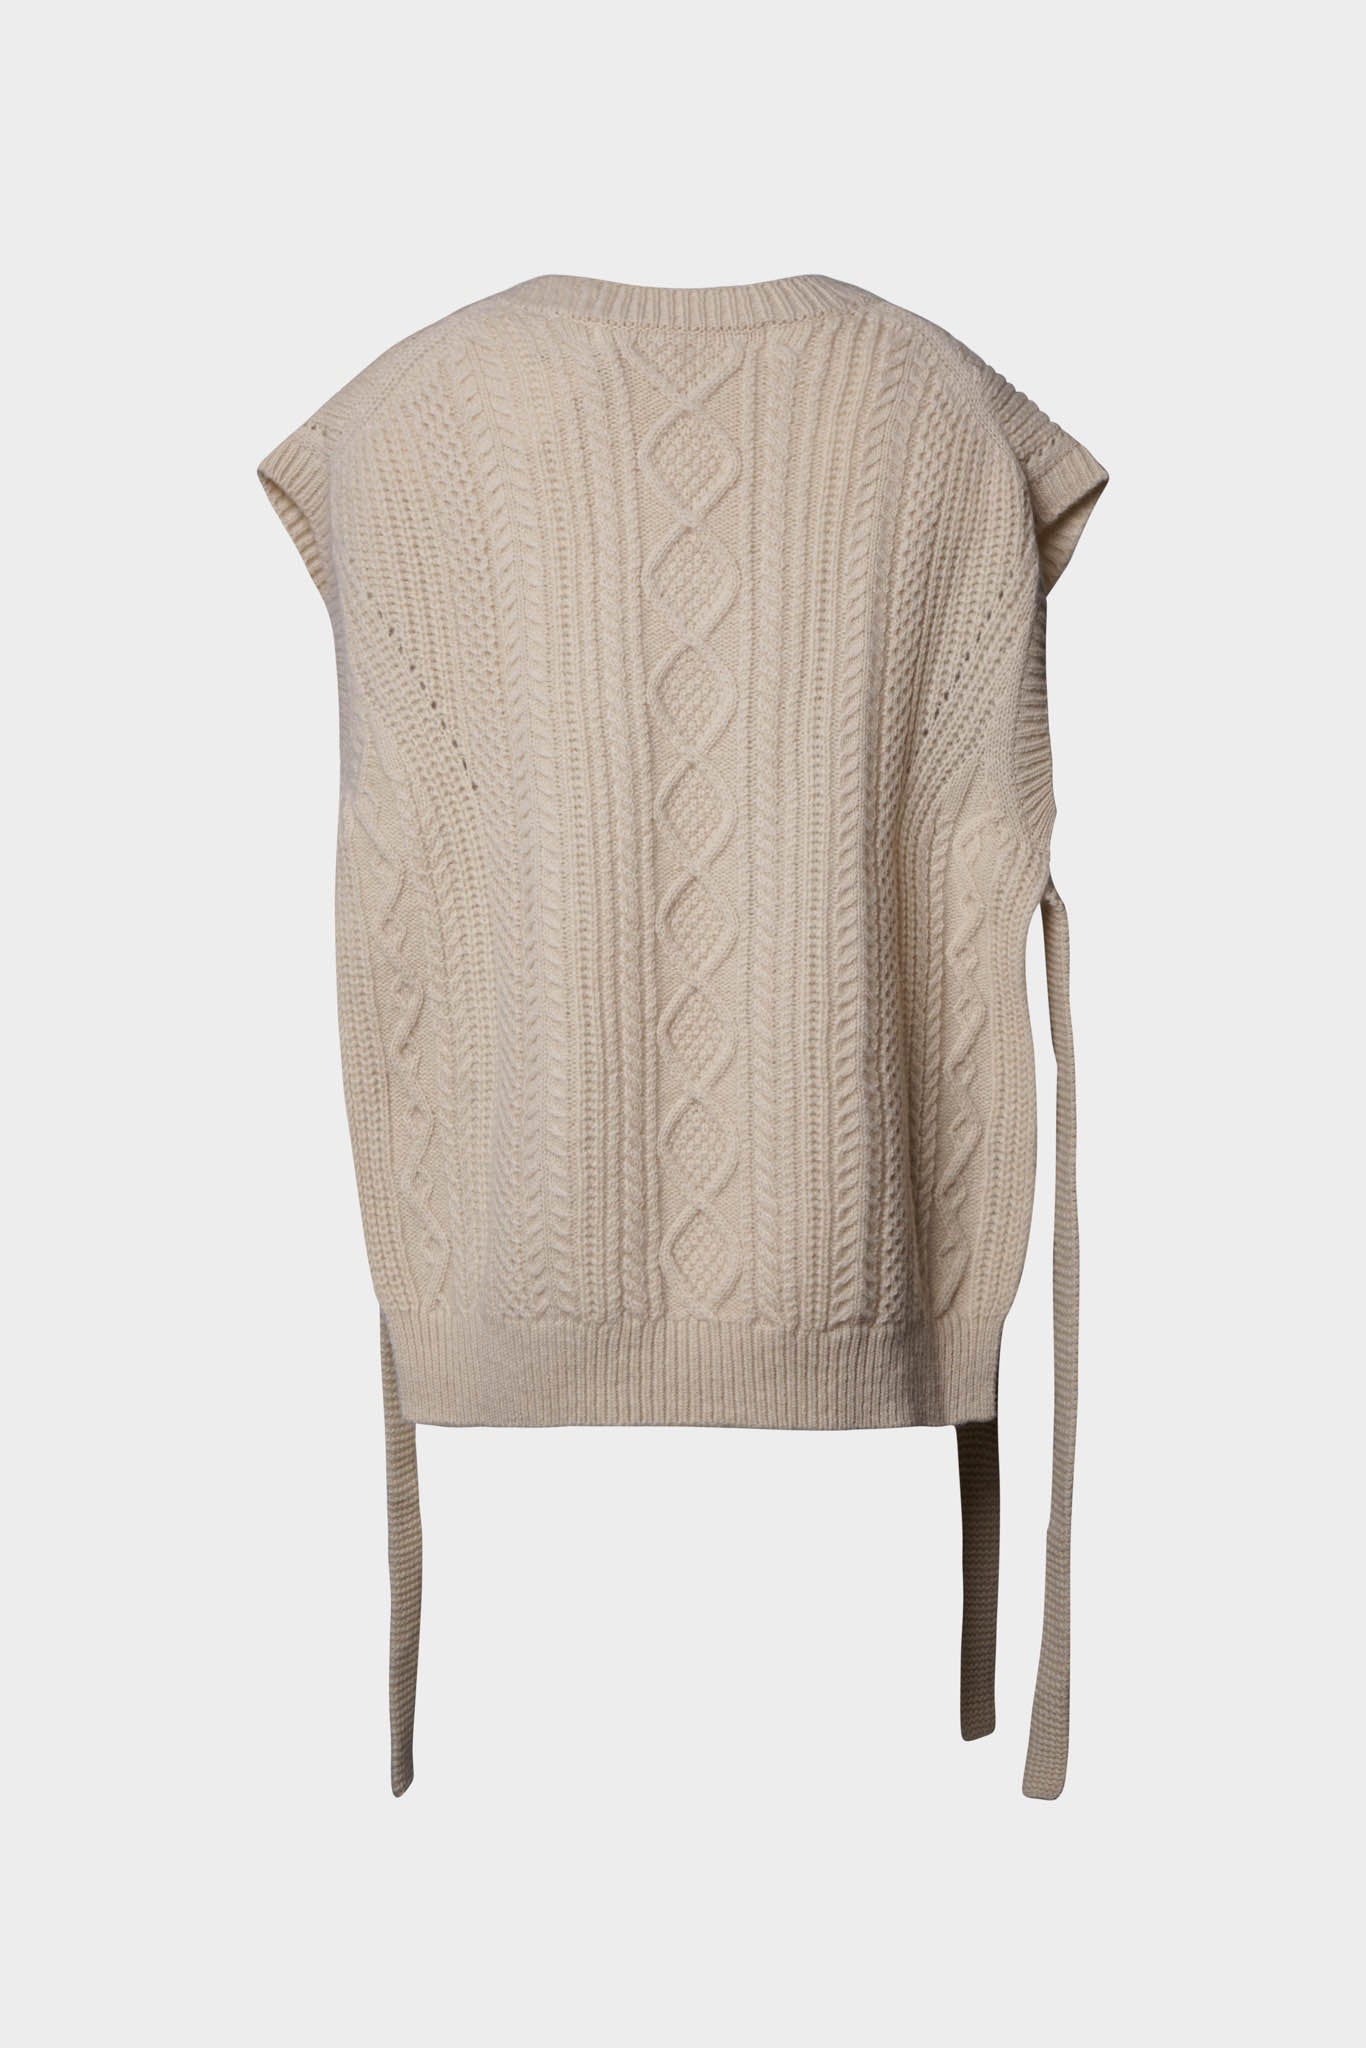 Selectshop FRAME - TAO Vest Outerwear Dubai